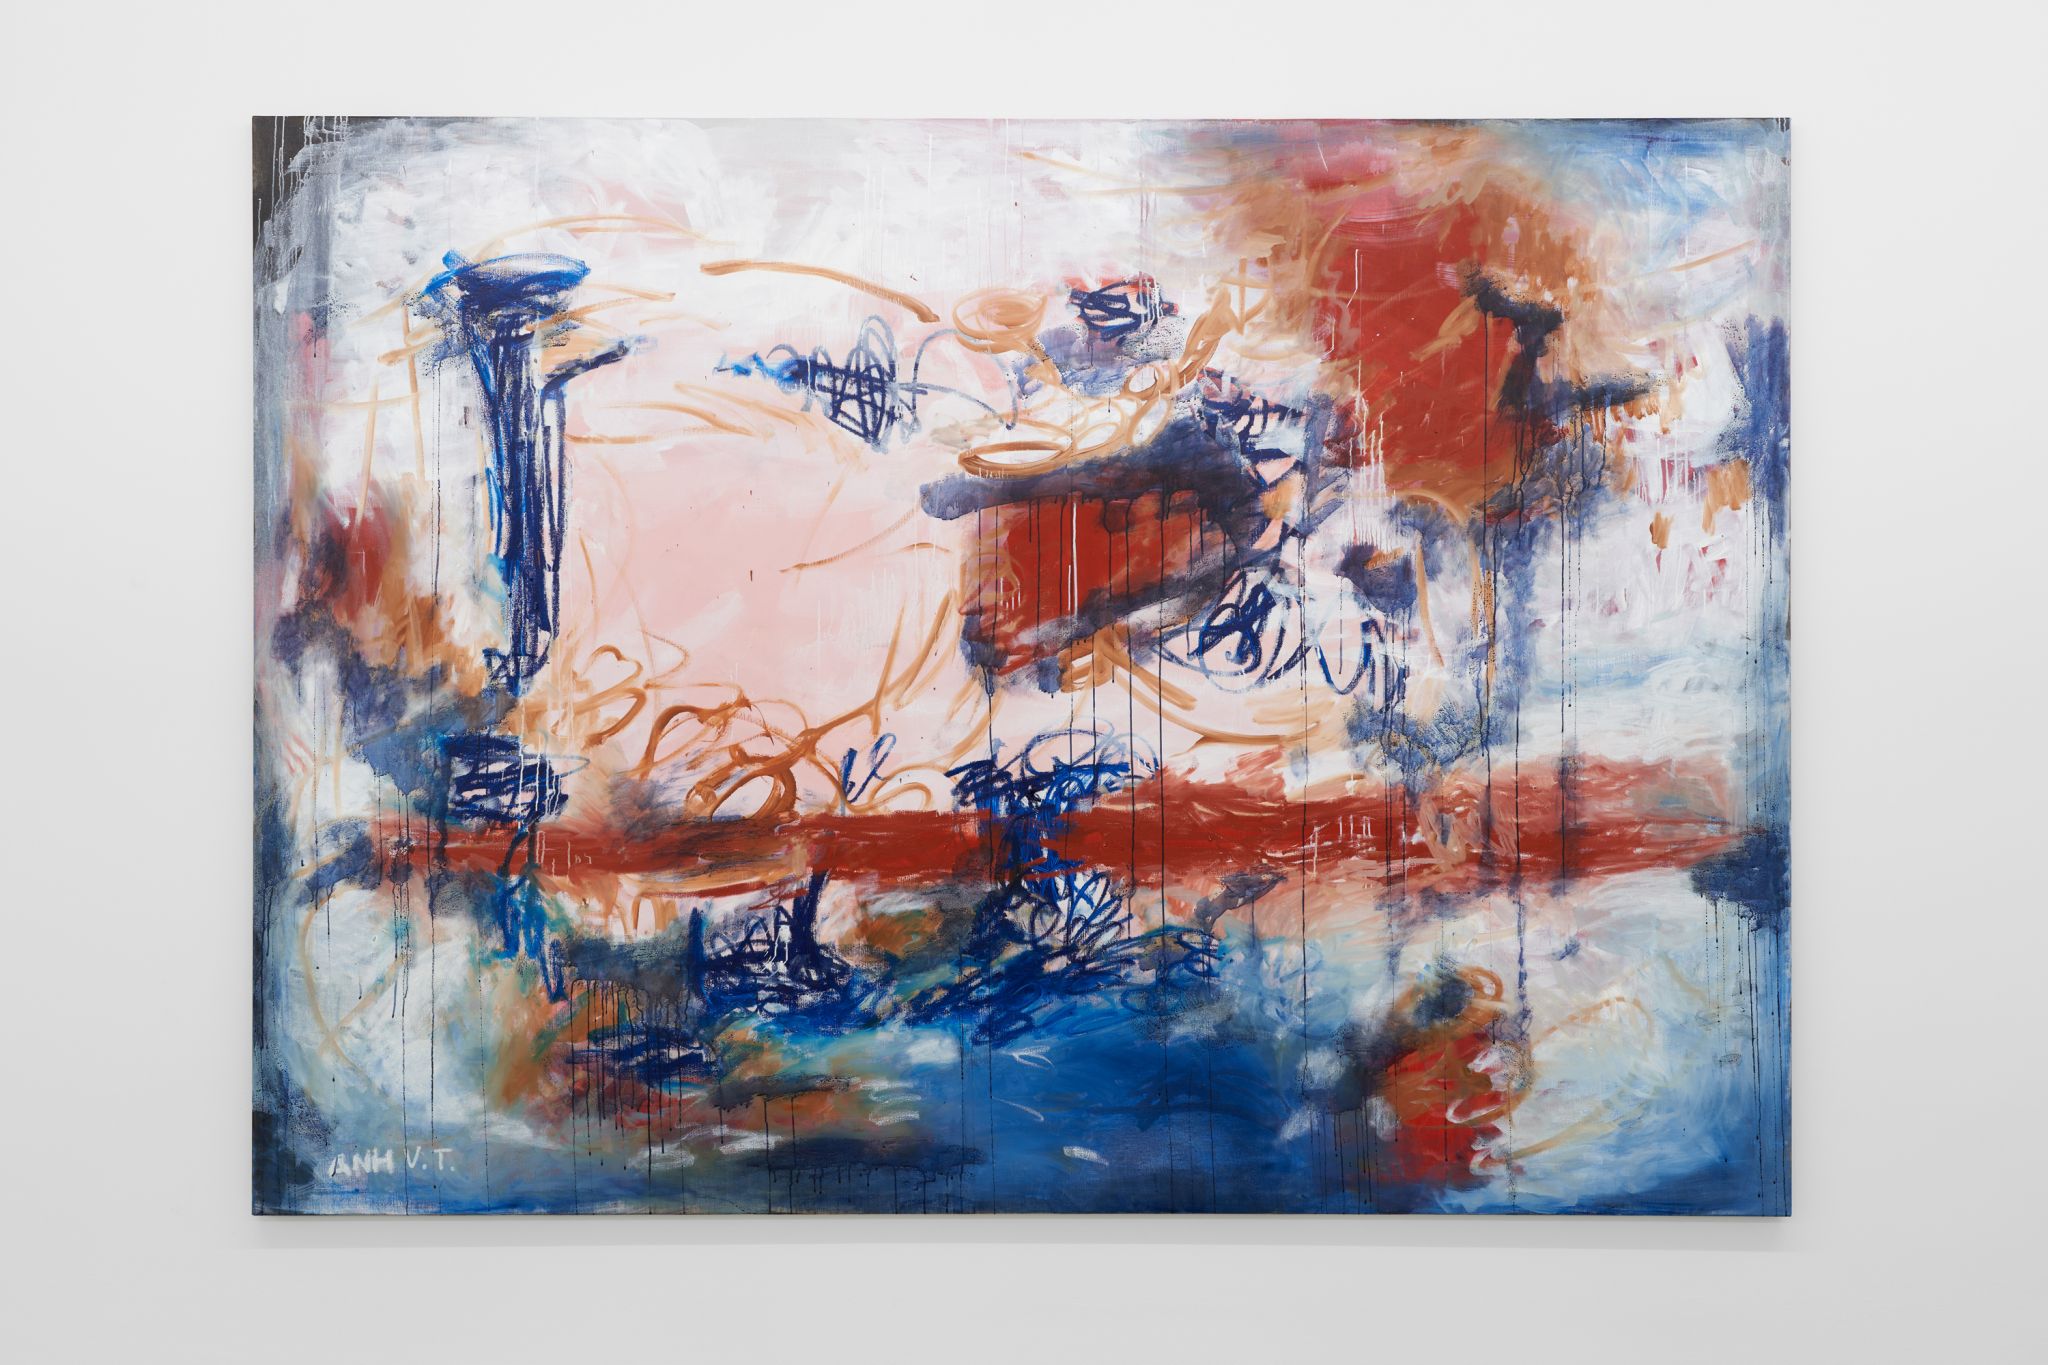 Anh Trần, Searching the sky for dreams (vertigo), 2023, Acrylic, oil, and vinyl on linen, 200 ⁠× ⁠280 ⁠cm, 78 ¾ ⁠× ⁠110 ¼ inches